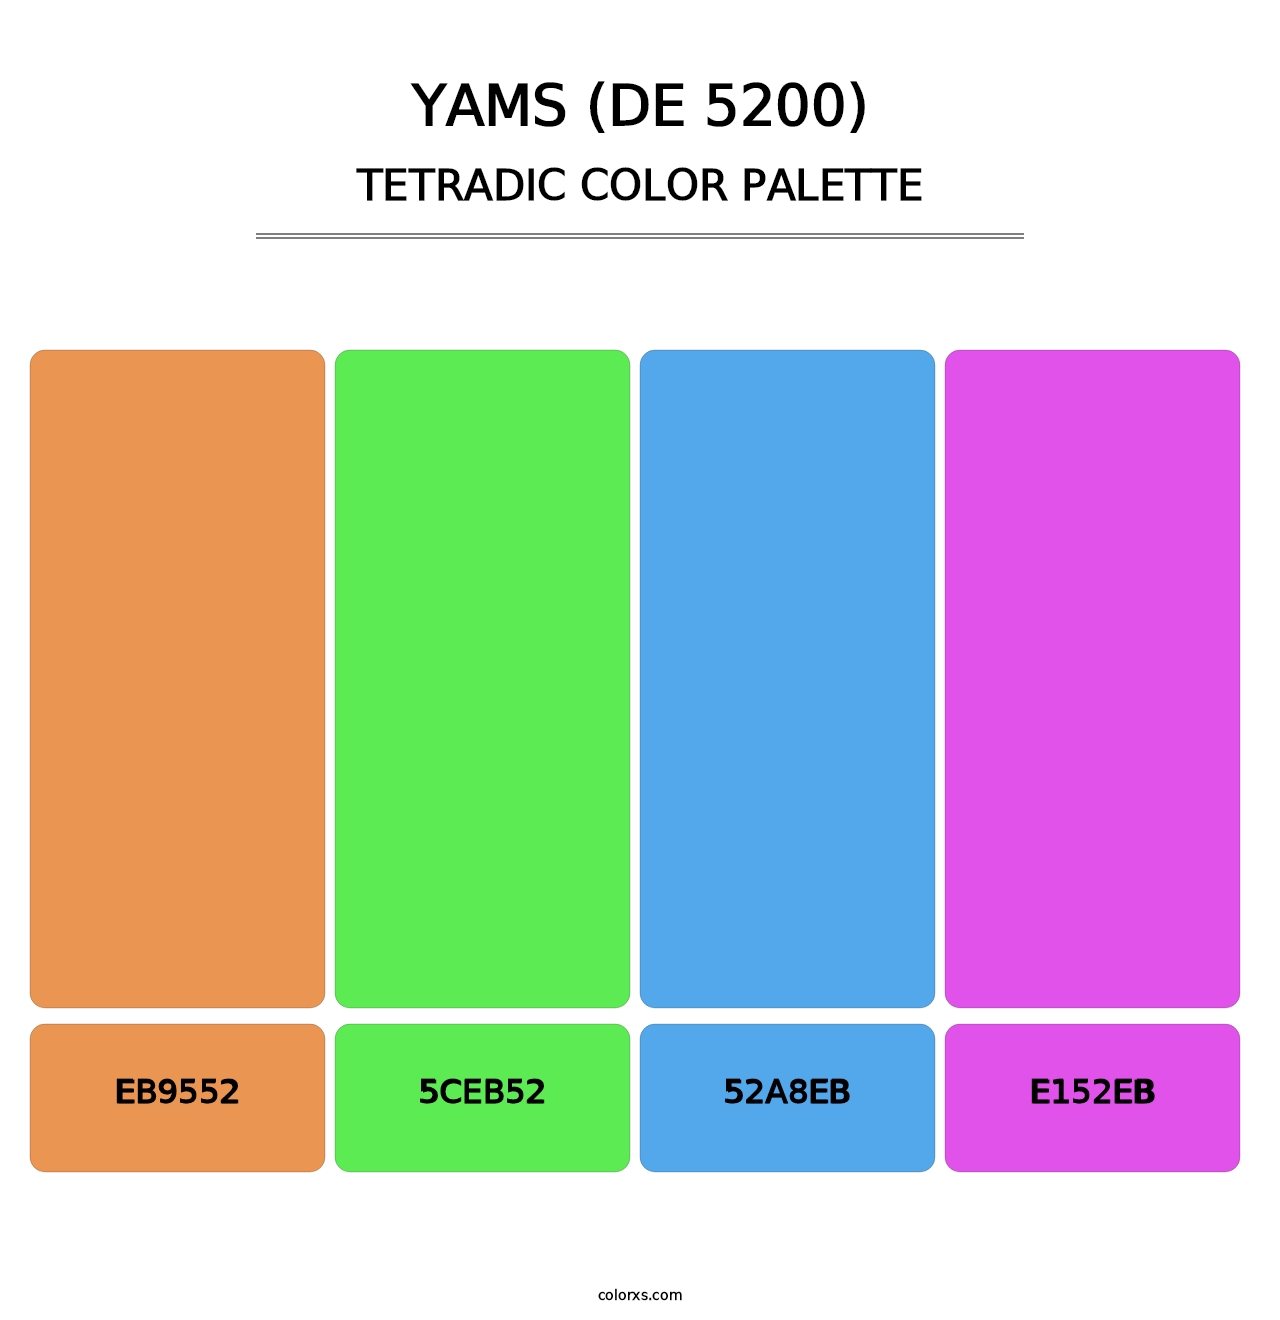 Yams (DE 5200) - Tetradic Color Palette